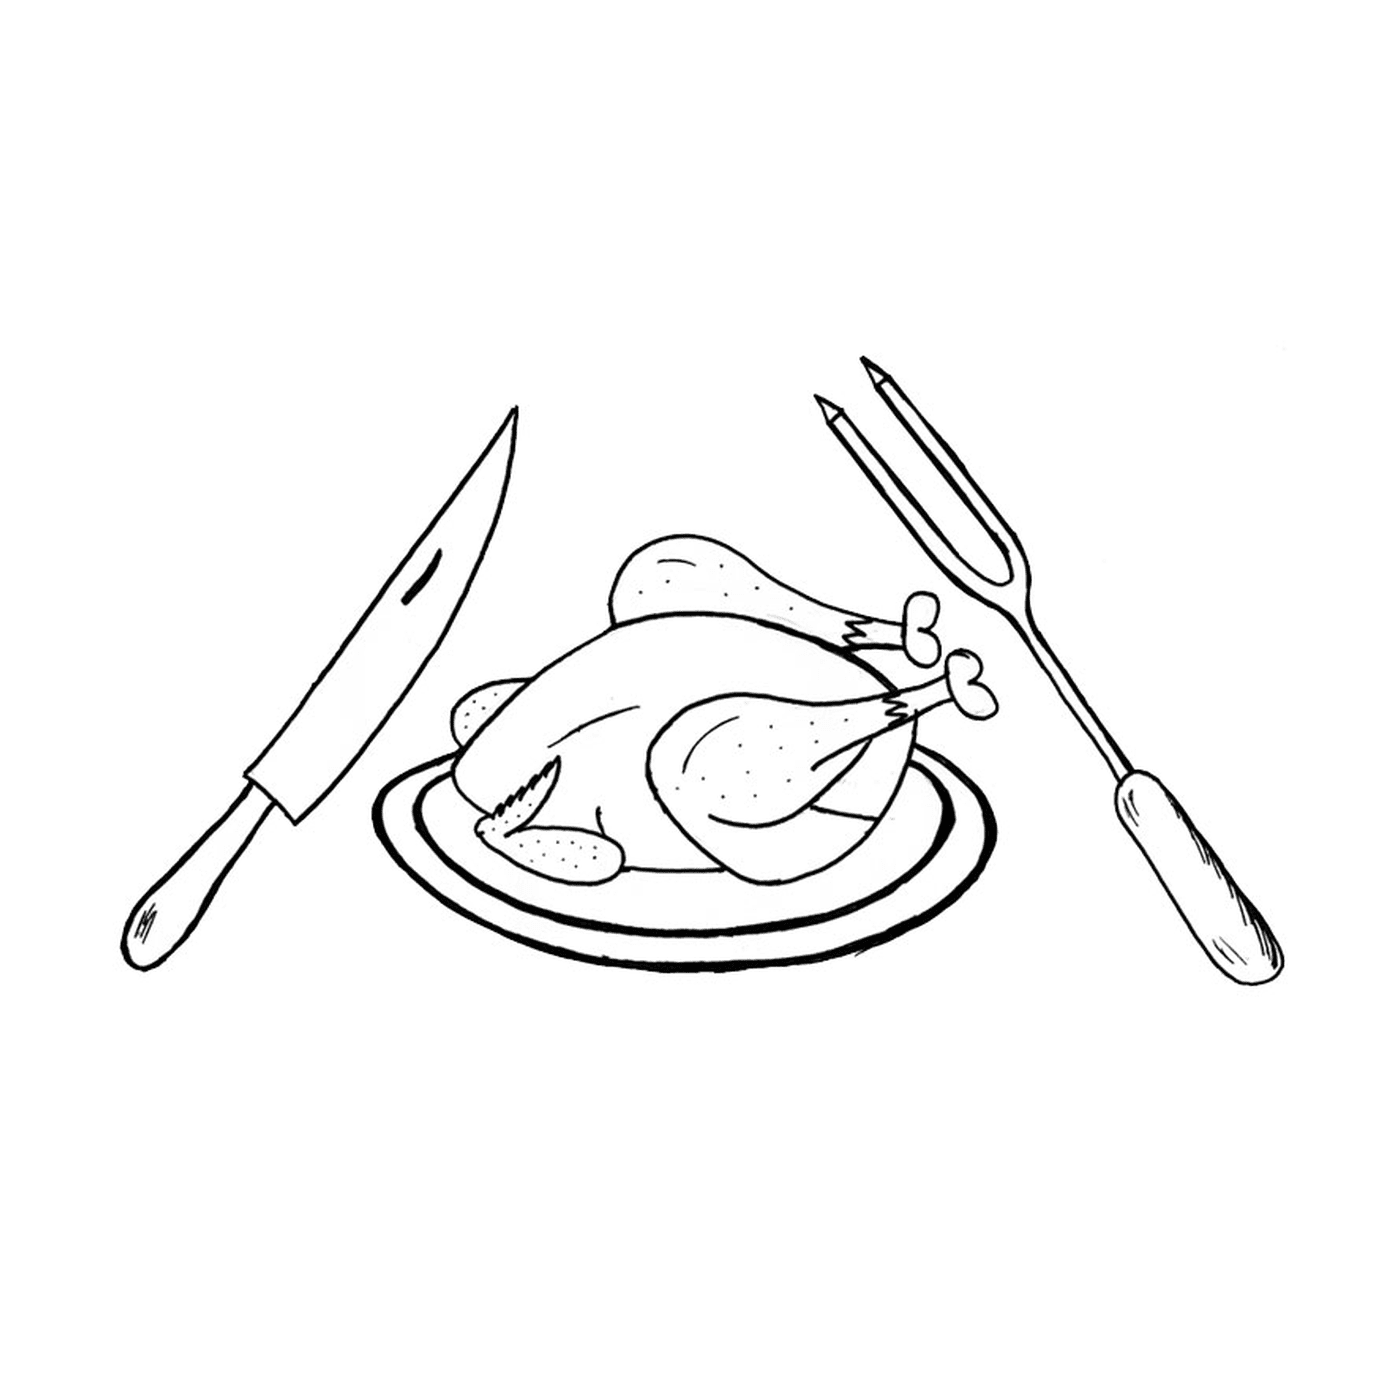  एक चाकू के साथ एक थाली पर मुर्गी, एक सारस और एक डब्बा 